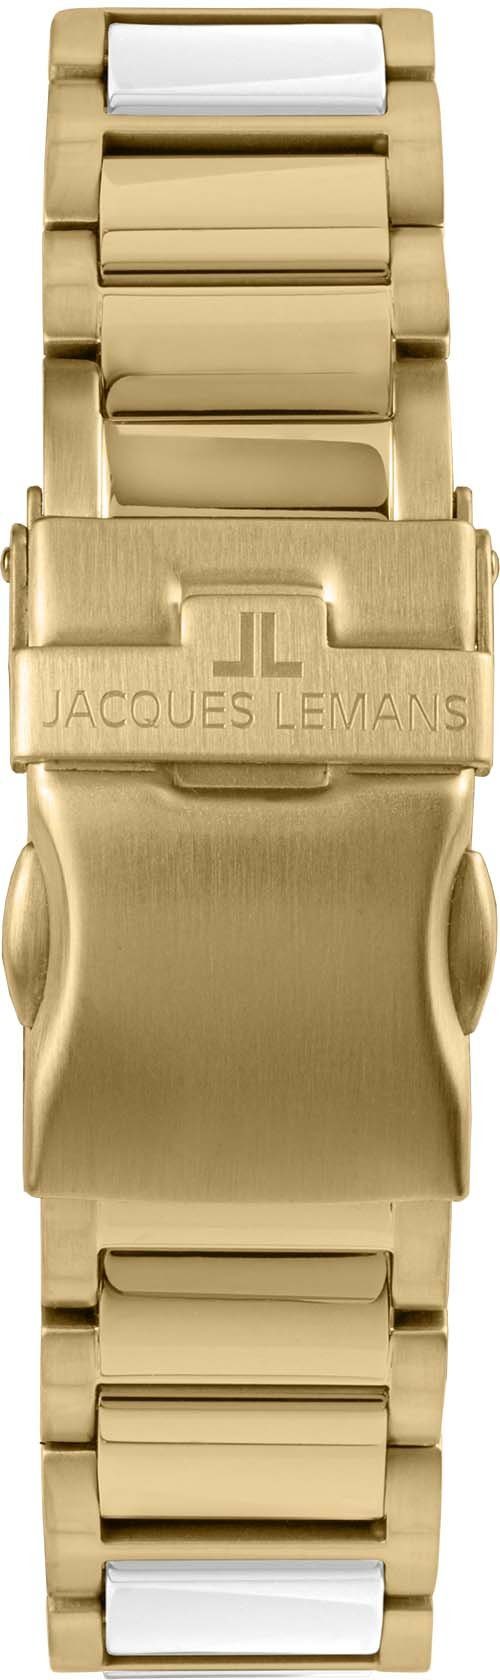 Jacques Lemans Keramikuhr Liverpool, 42-12L